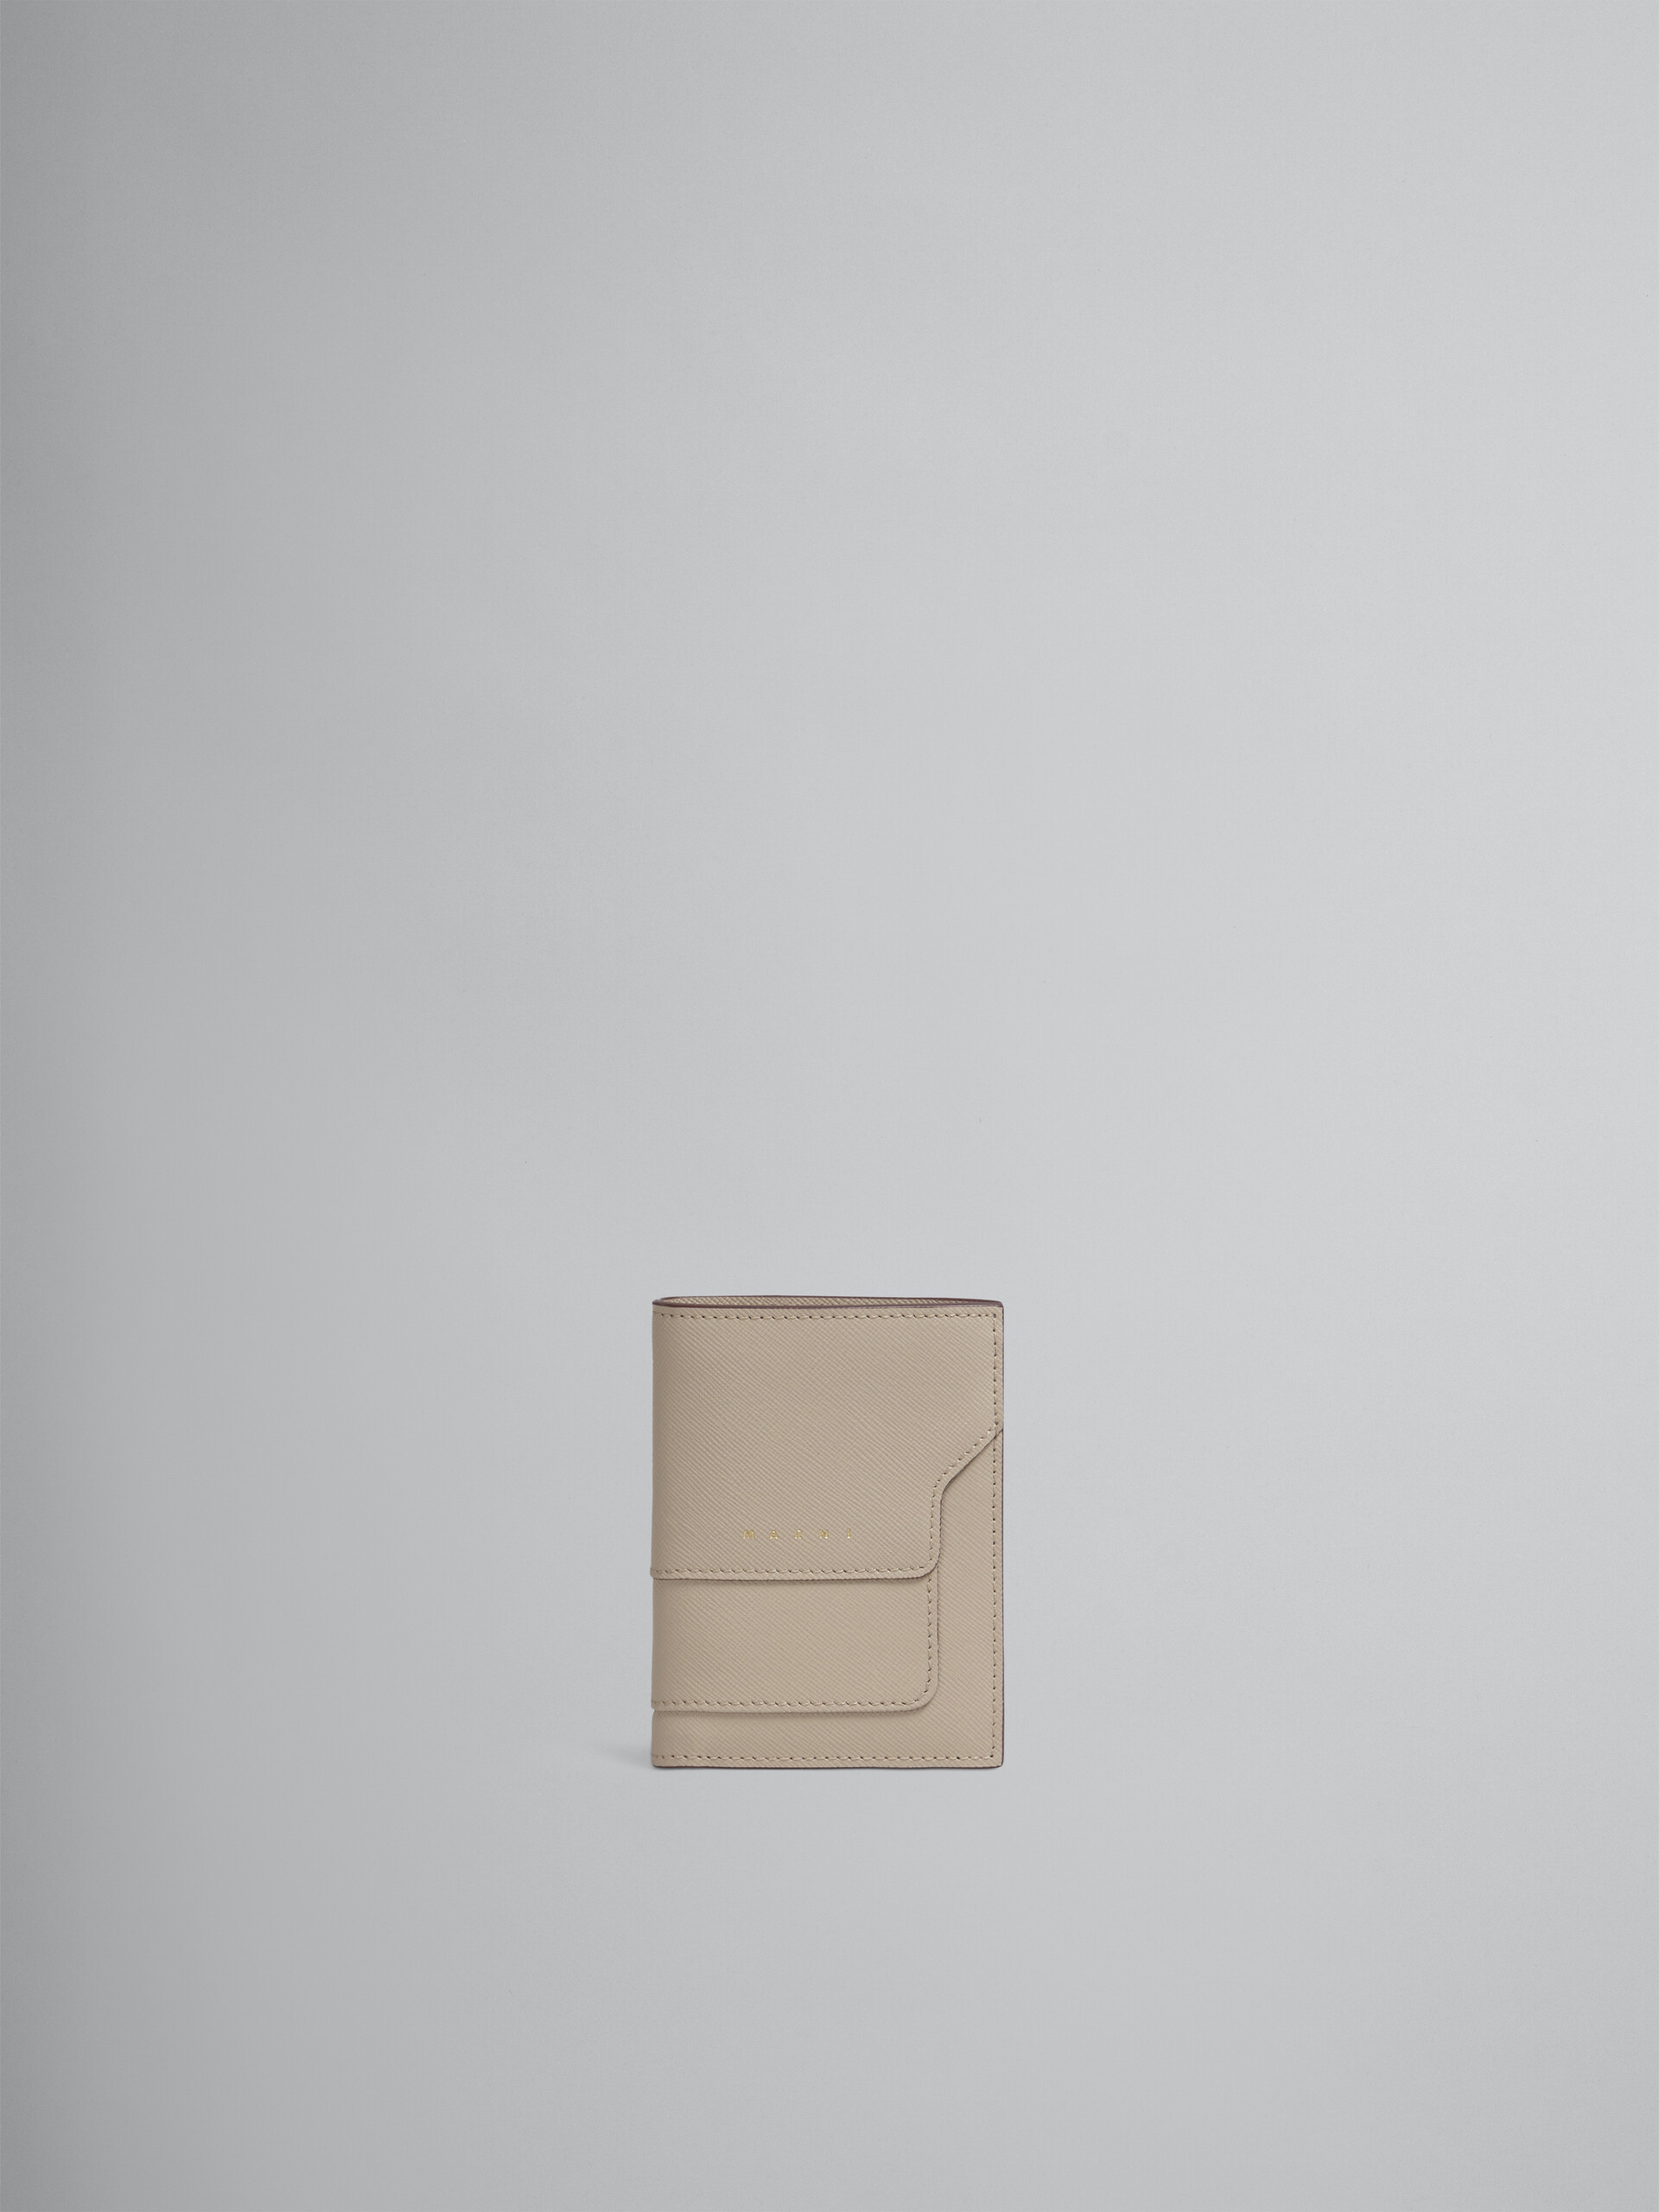 Portefeuille à deux rabats en cuir saffiano beige - Portefeuilles - Image 1